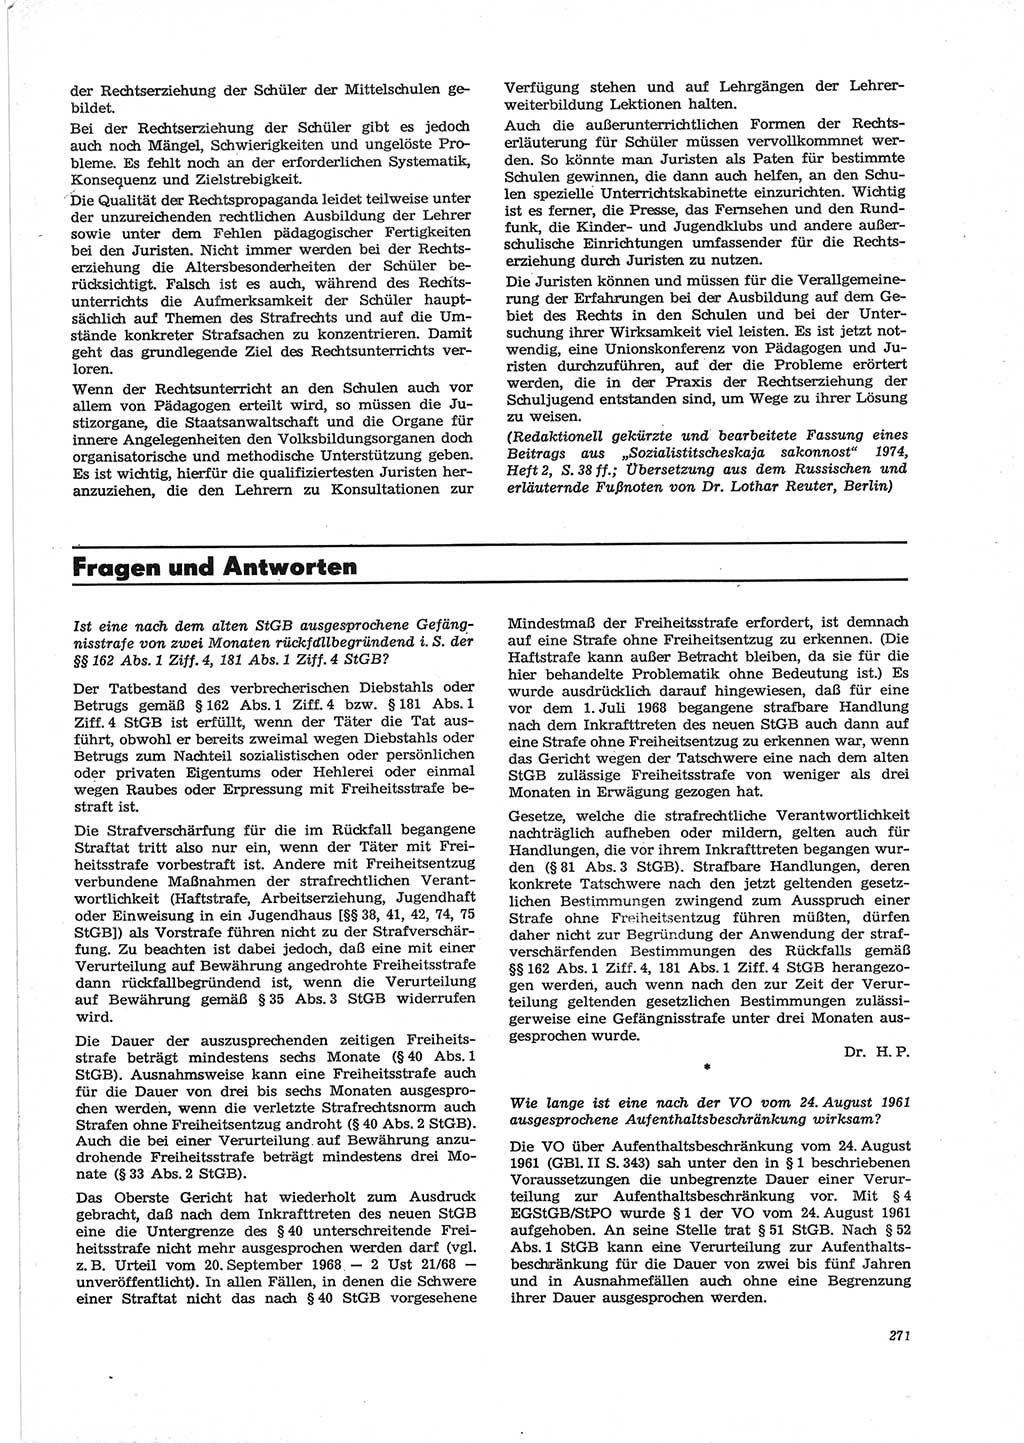 Neue Justiz (NJ), Zeitschrift für Recht und Rechtswissenschaft [Deutsche Demokratische Republik (DDR)], 28. Jahrgang 1974, Seite 271 (NJ DDR 1974, S. 271)